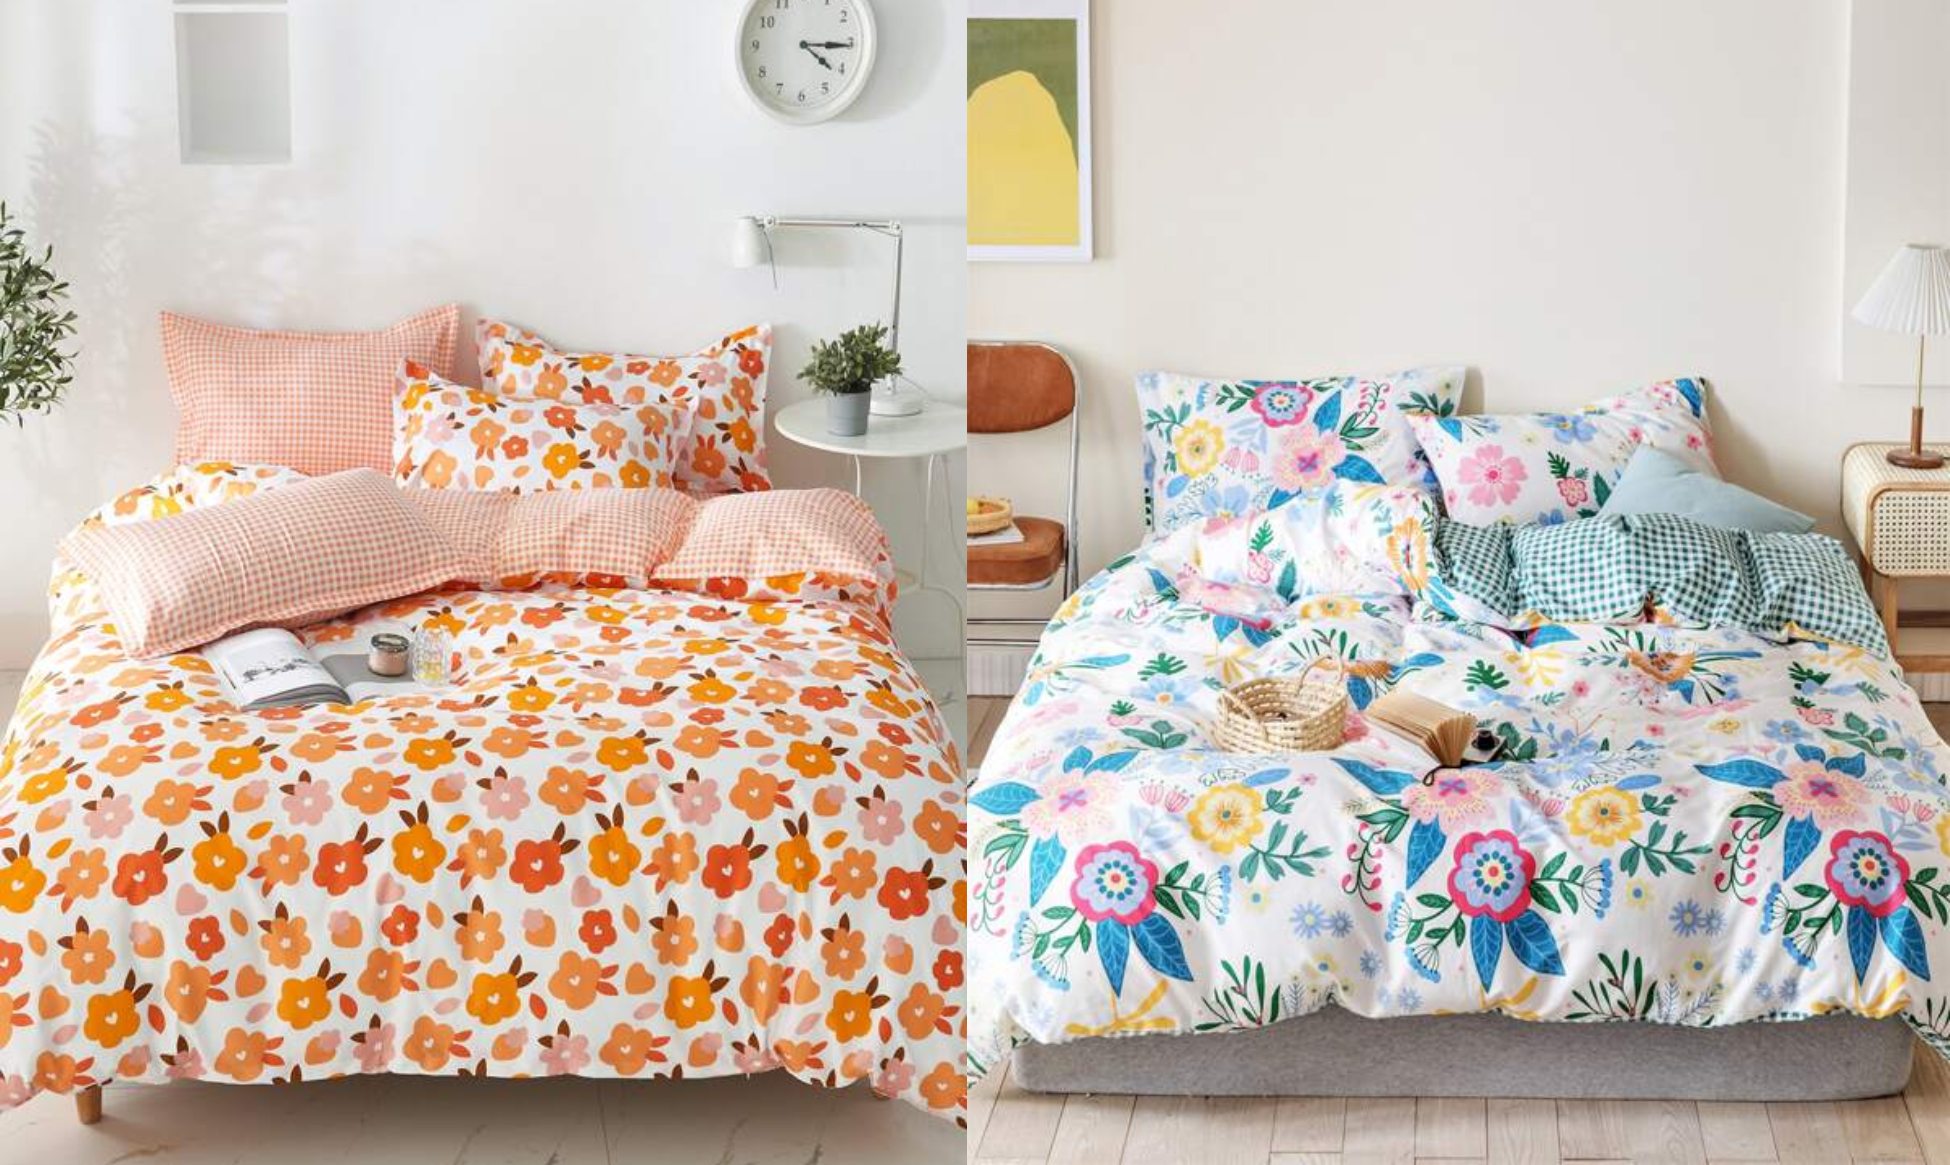 Estas son las sábanas más bonitas para decorar tu habitación por muy poco